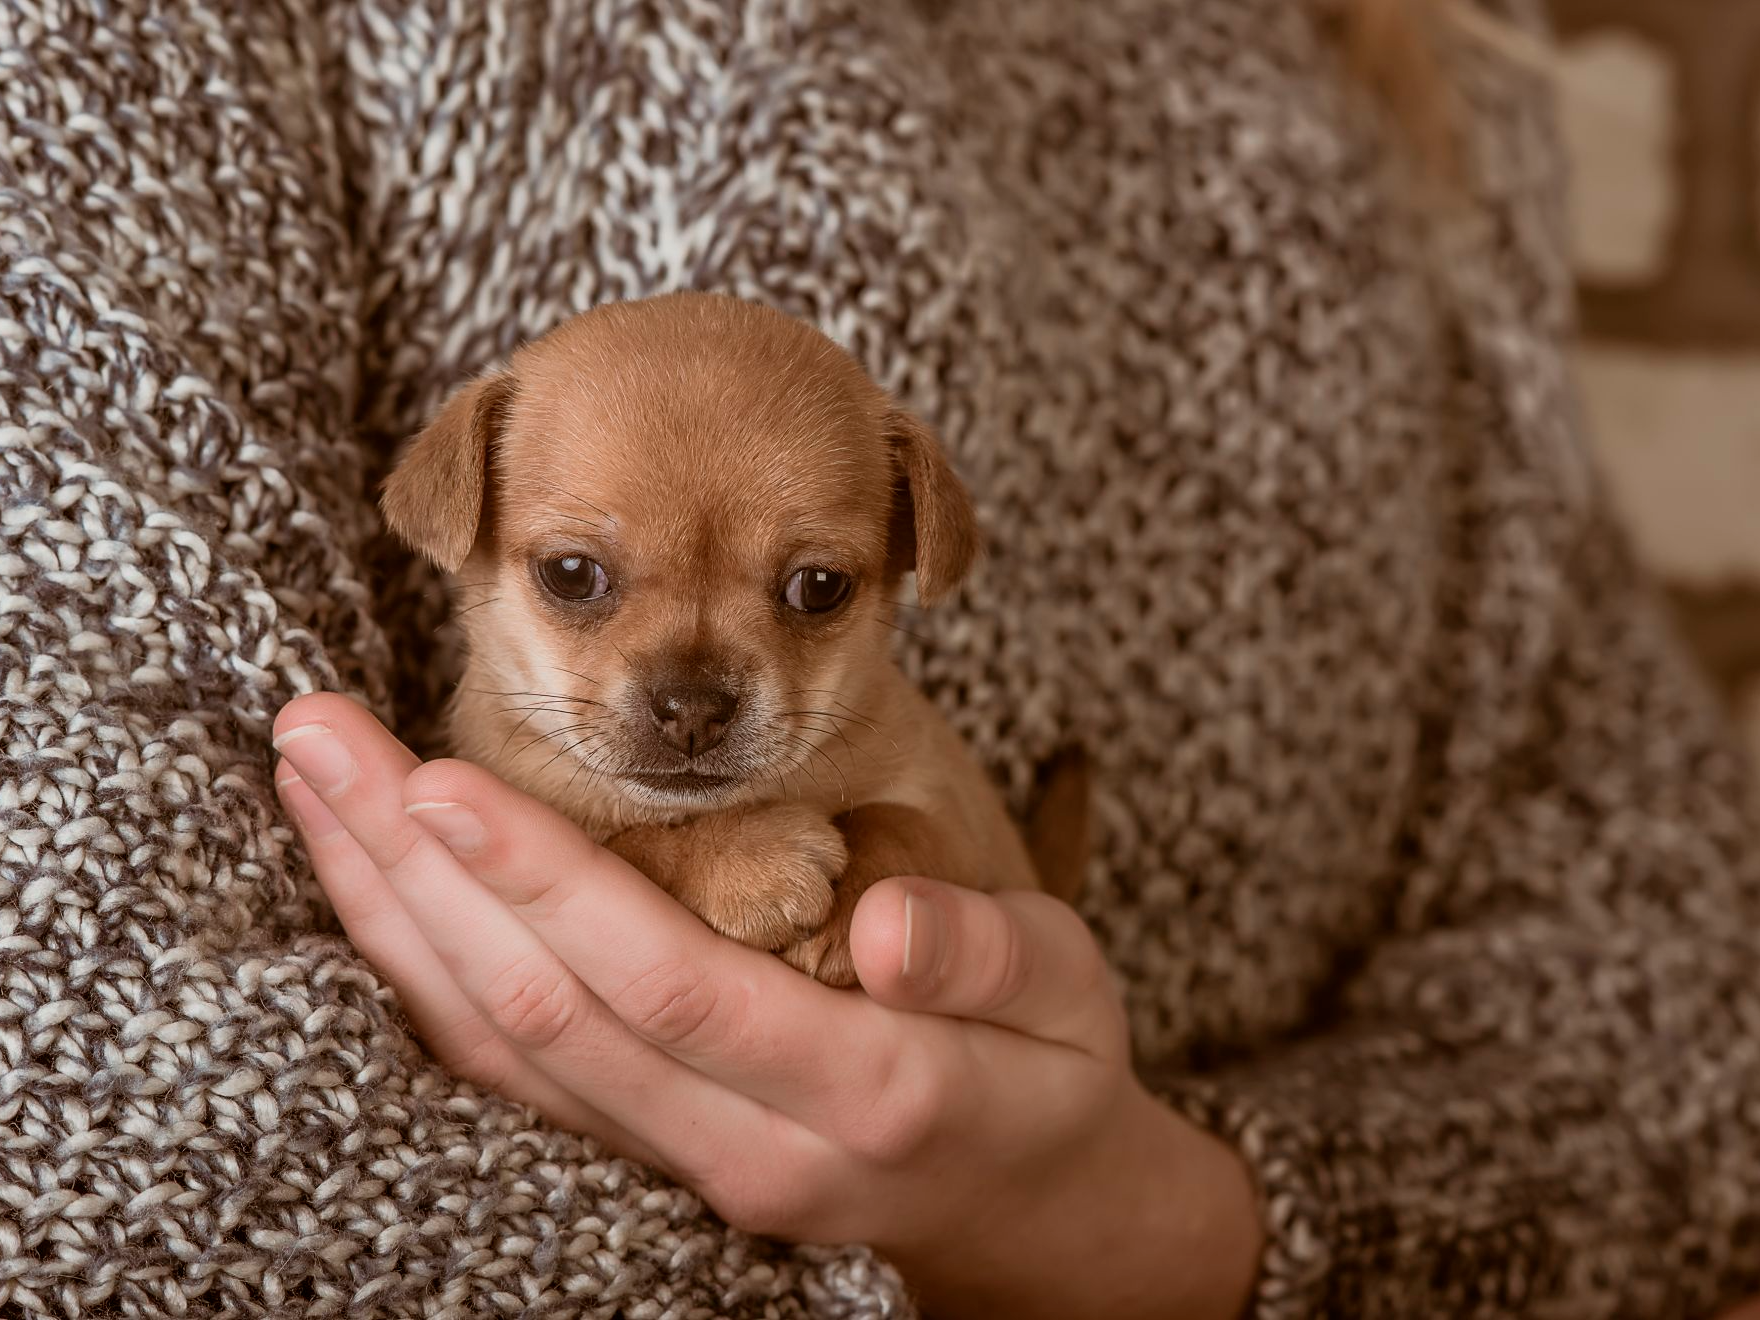 kleiner Hund in den Händen eines Mädchens